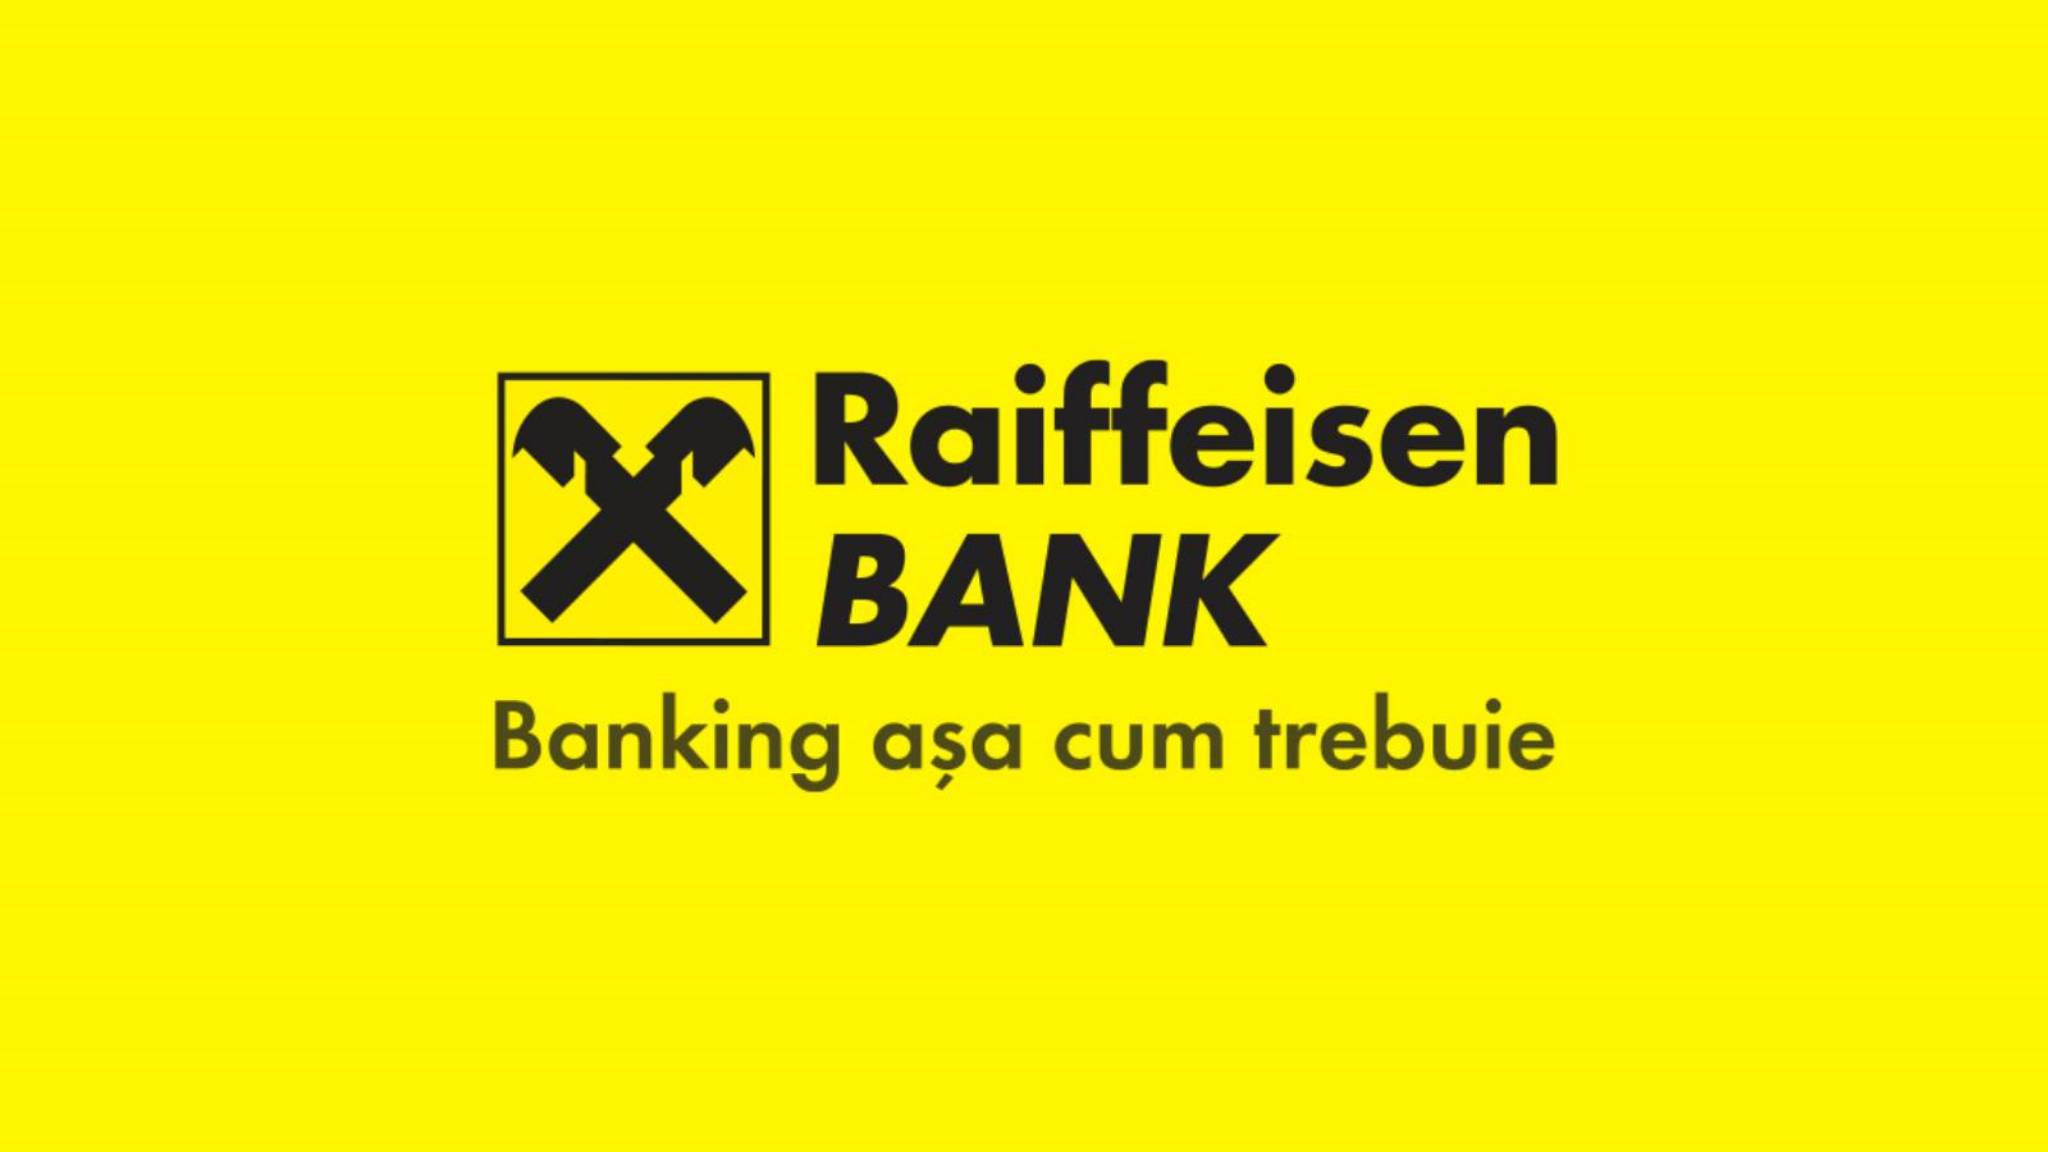 Changements officiels de la Banque Raiffeisen Décisions de DERNIÈRE MINUTE ATTENTION Clients roumains